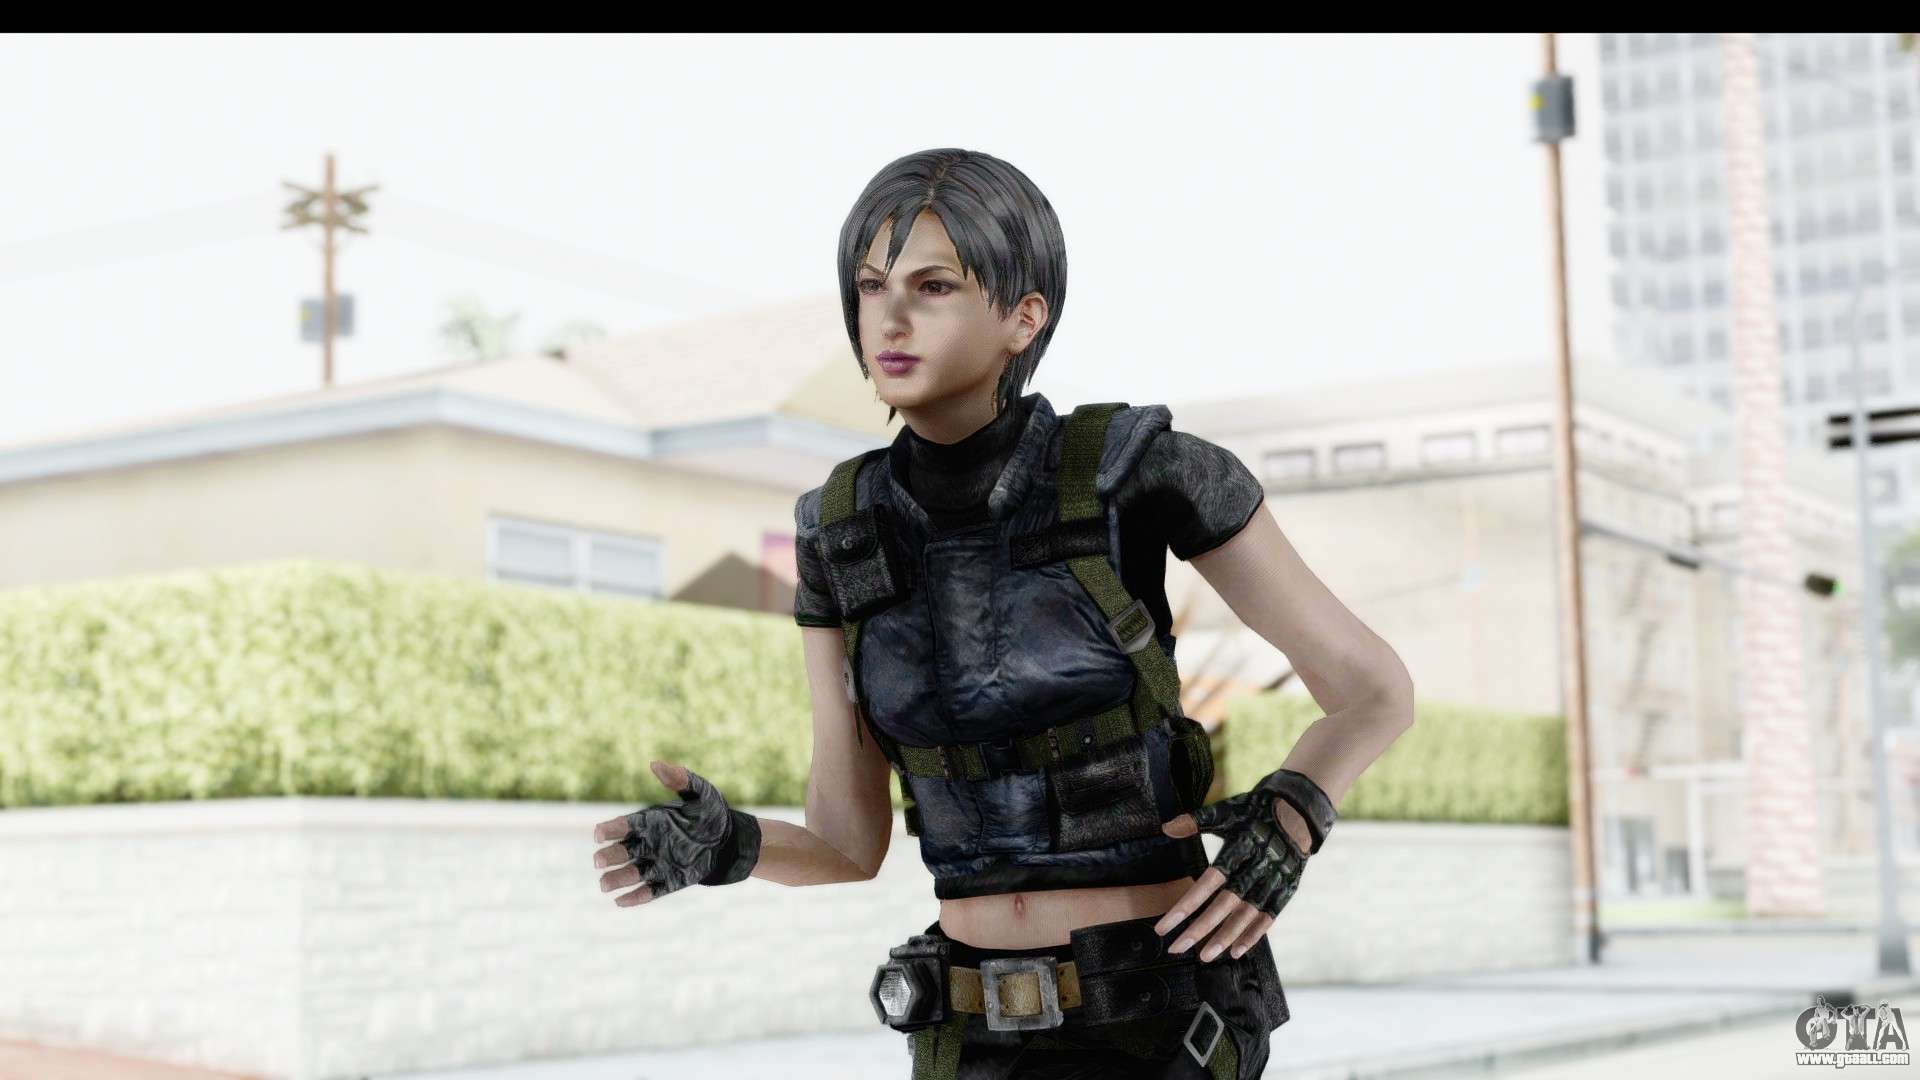 Infinite GTA 4 Mod: GTA IV SKINS : Resident Evil 6 Jake Muller